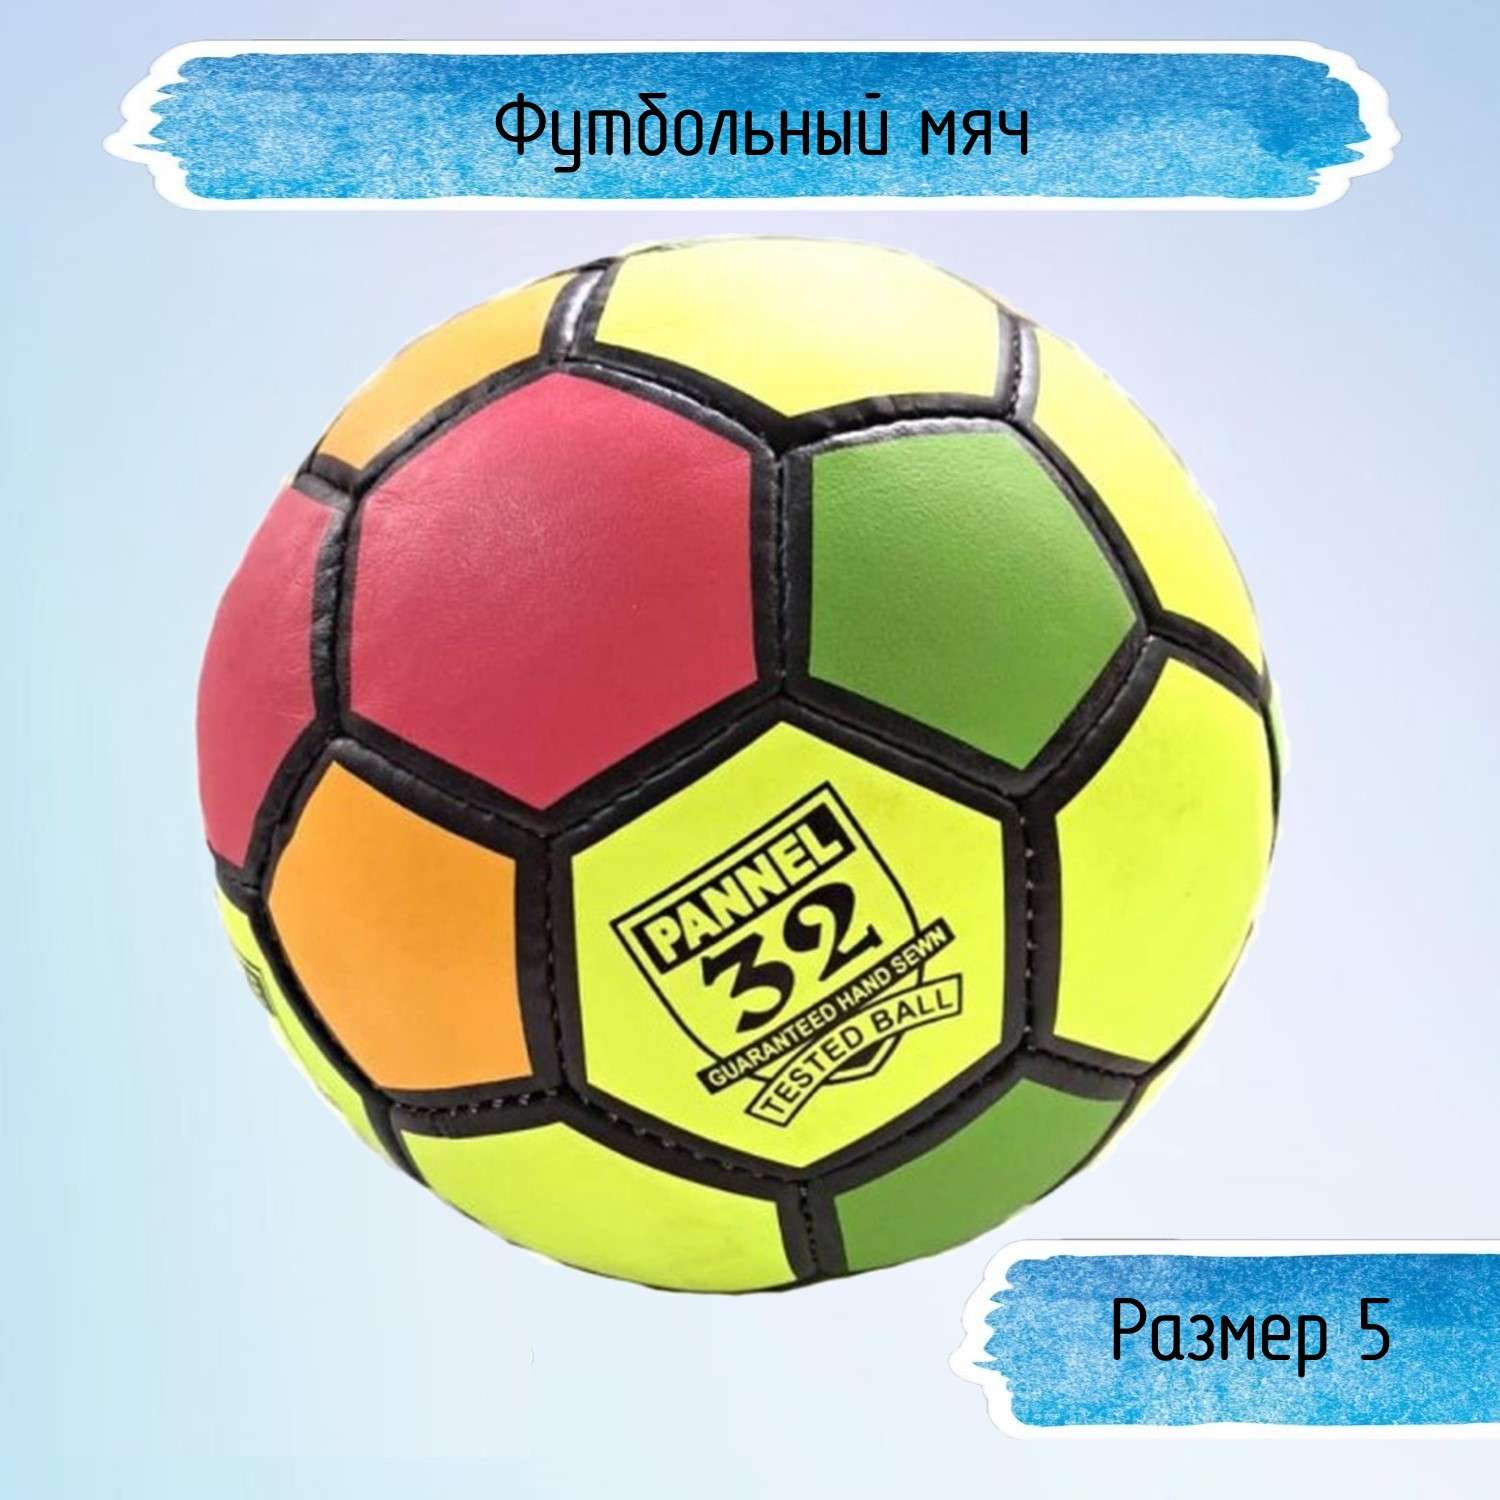 Разноцветный футбольный мяч Uniglodis 32 панели размер 5 - фото 1